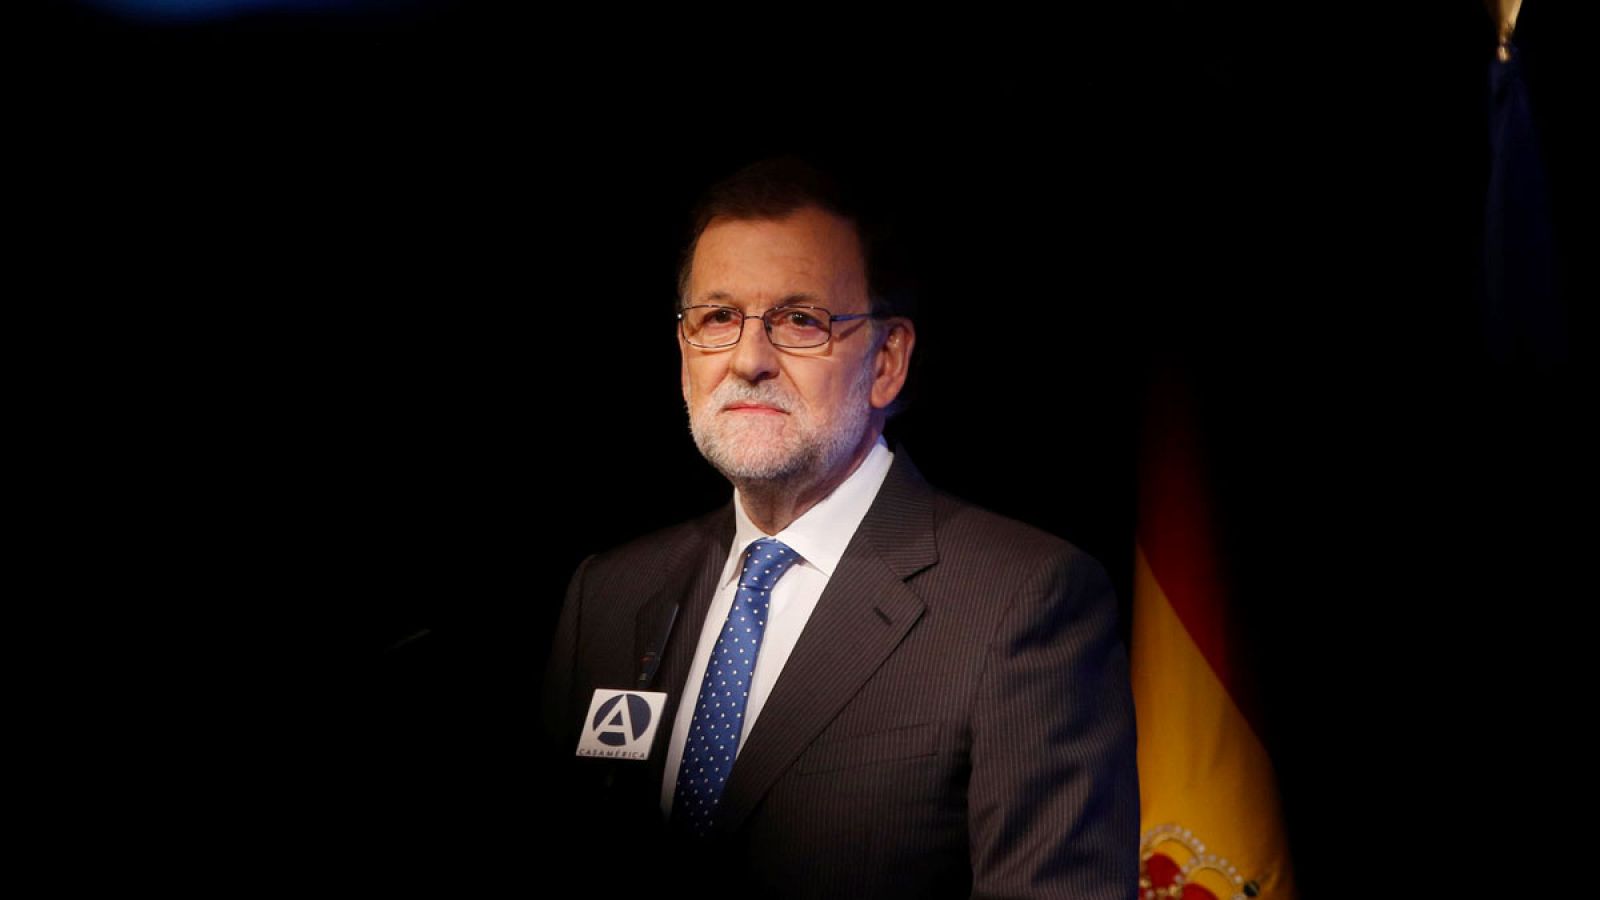 El presidente del Gobierno en funciones, Mariano Rajoy, en una imagen de archivo